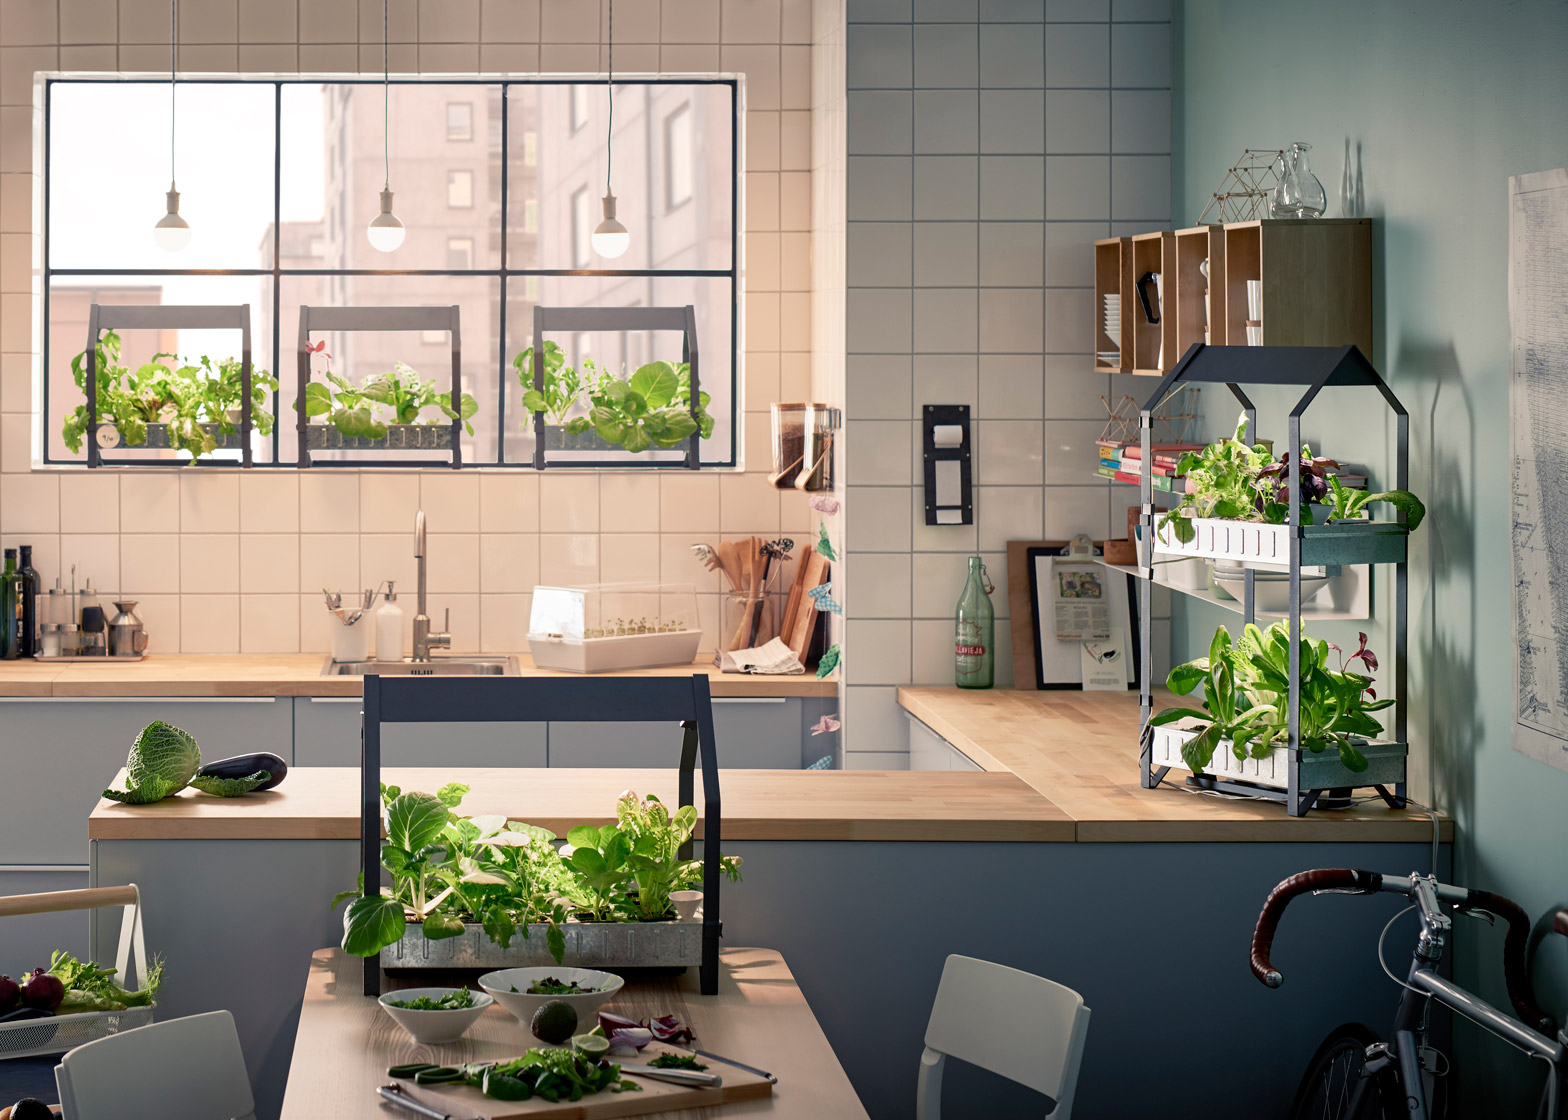 Ikea è pronta a lanciare sul mercato una nuova serie di prodotti per la coltivazione idroponica.